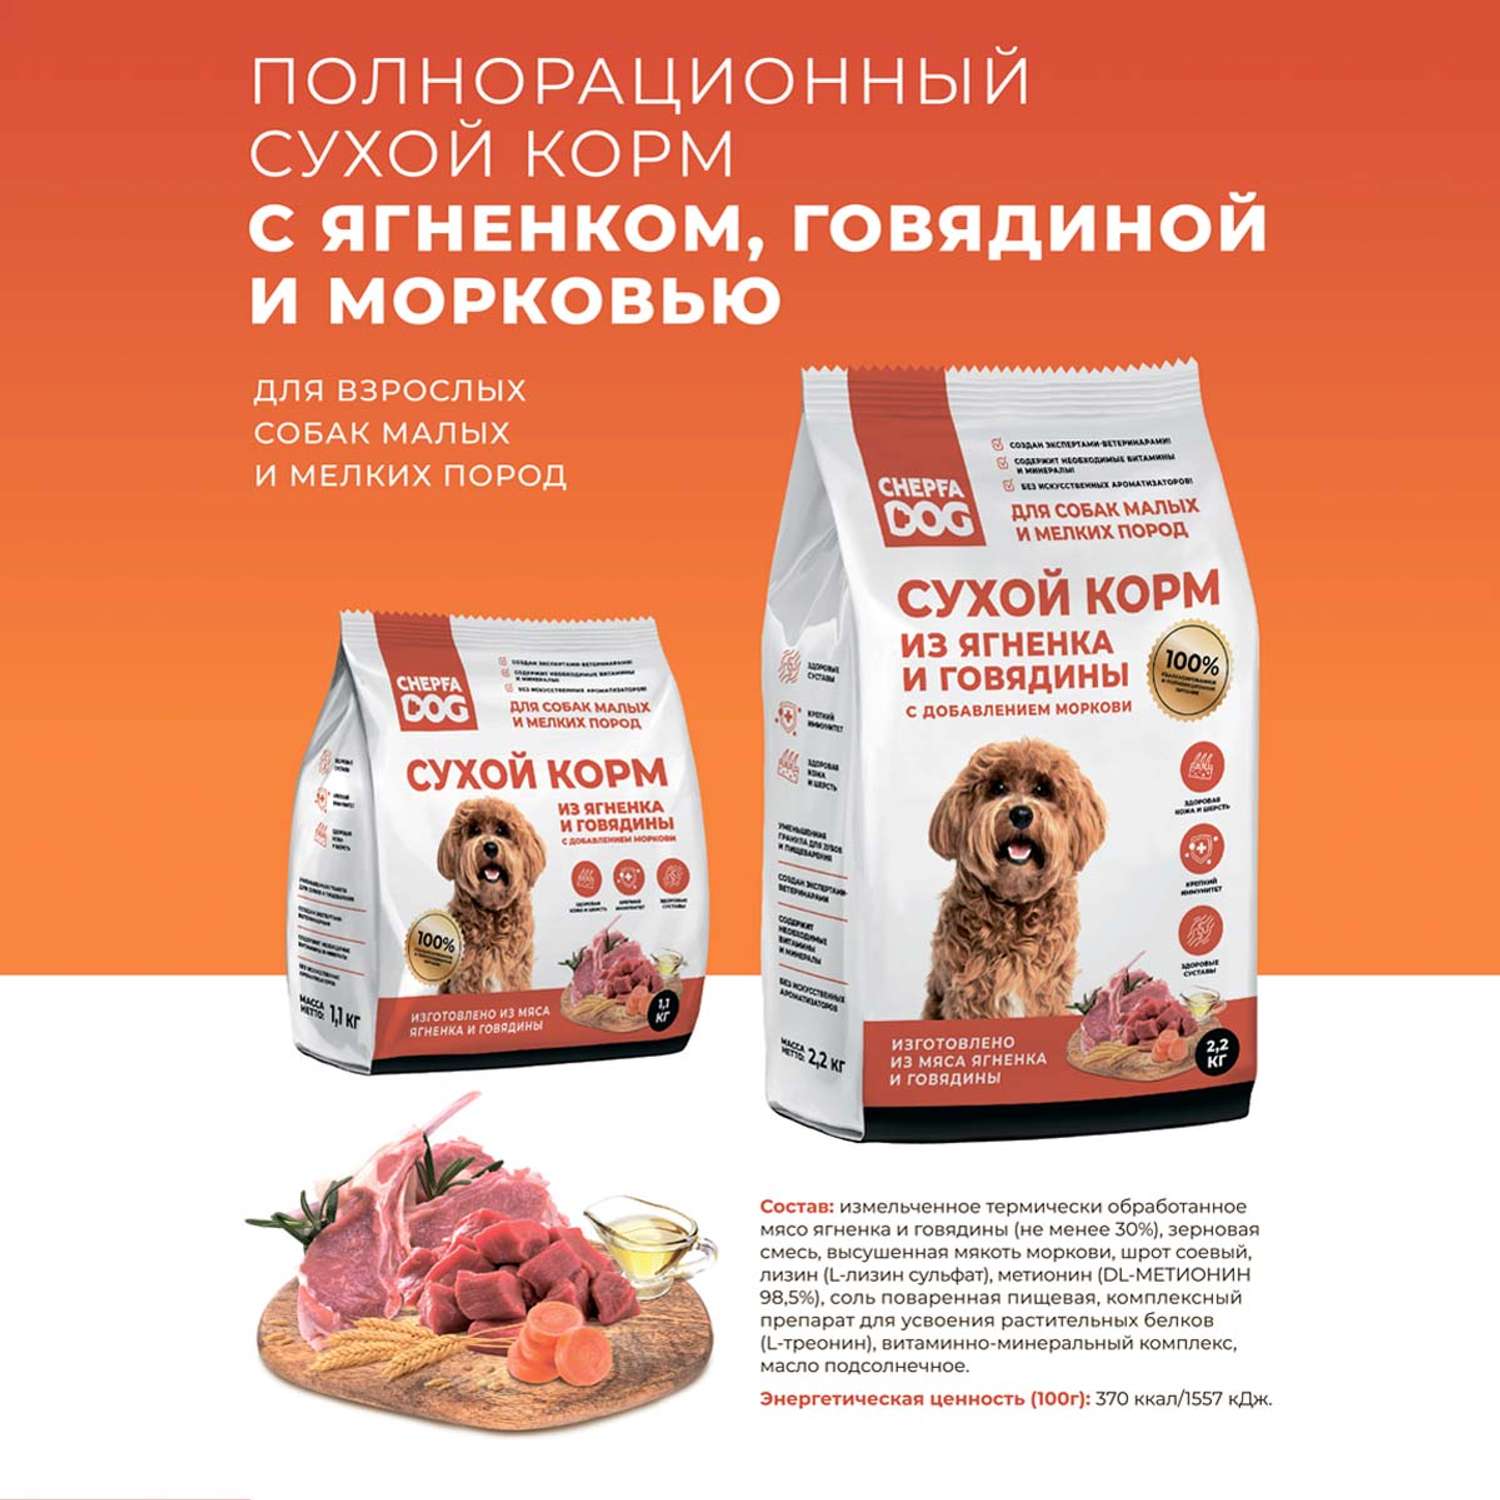 Сухой корм Chepfa Dog полнорационный ягненок и говядина 1.1 кг для взрослых собак малых и мелких пород - фото 8